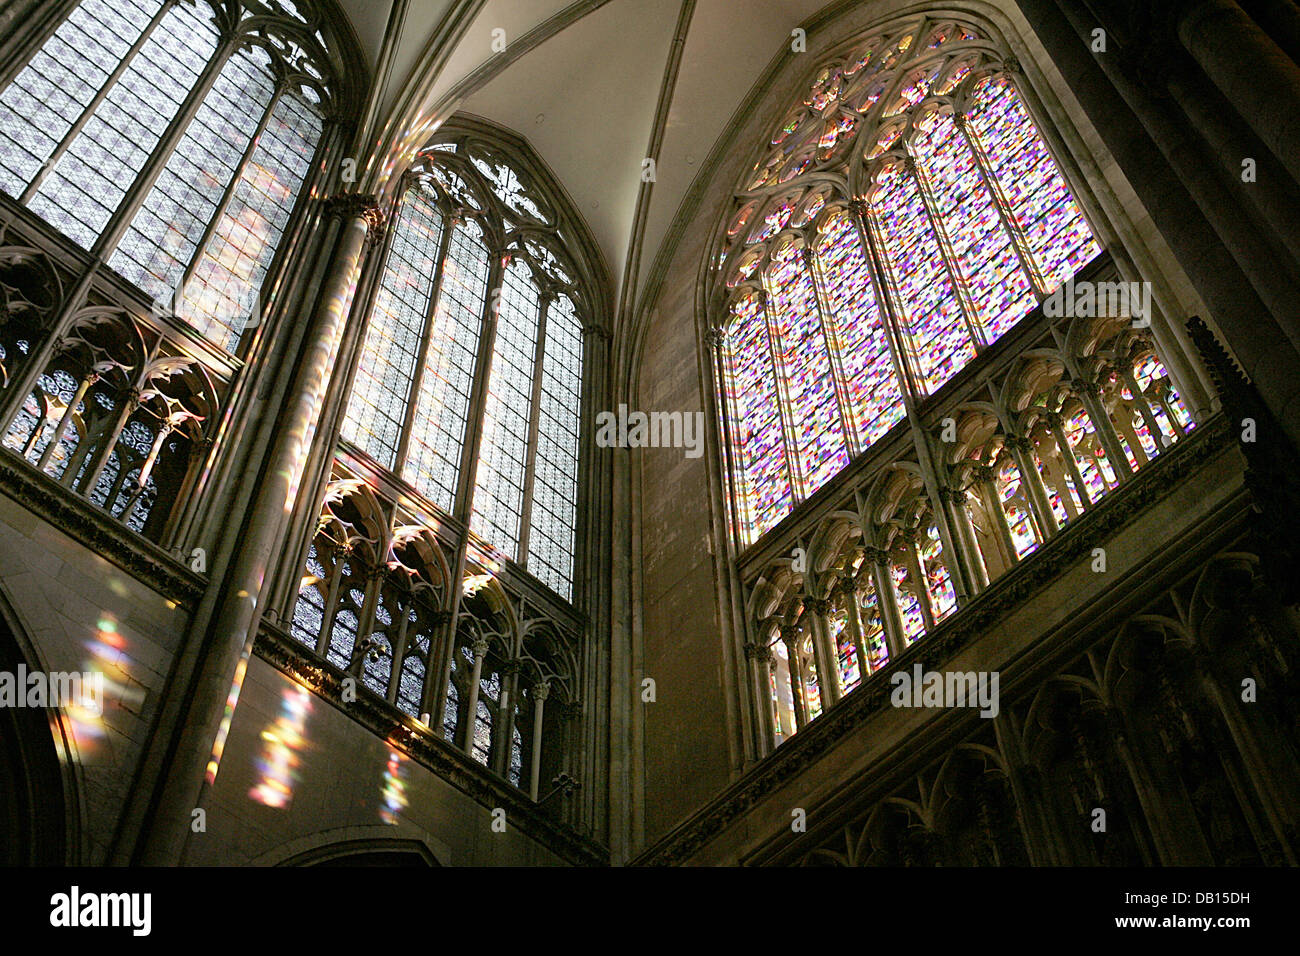 La foto mostra il colorato 113 metri quadrati finestra creata da un artista Gerhard Richter nella cattedrale di Colonia a Colonia, Germania, 22 ottobre 2007. Foto: JOERG CARSTENSEN Foto Stock